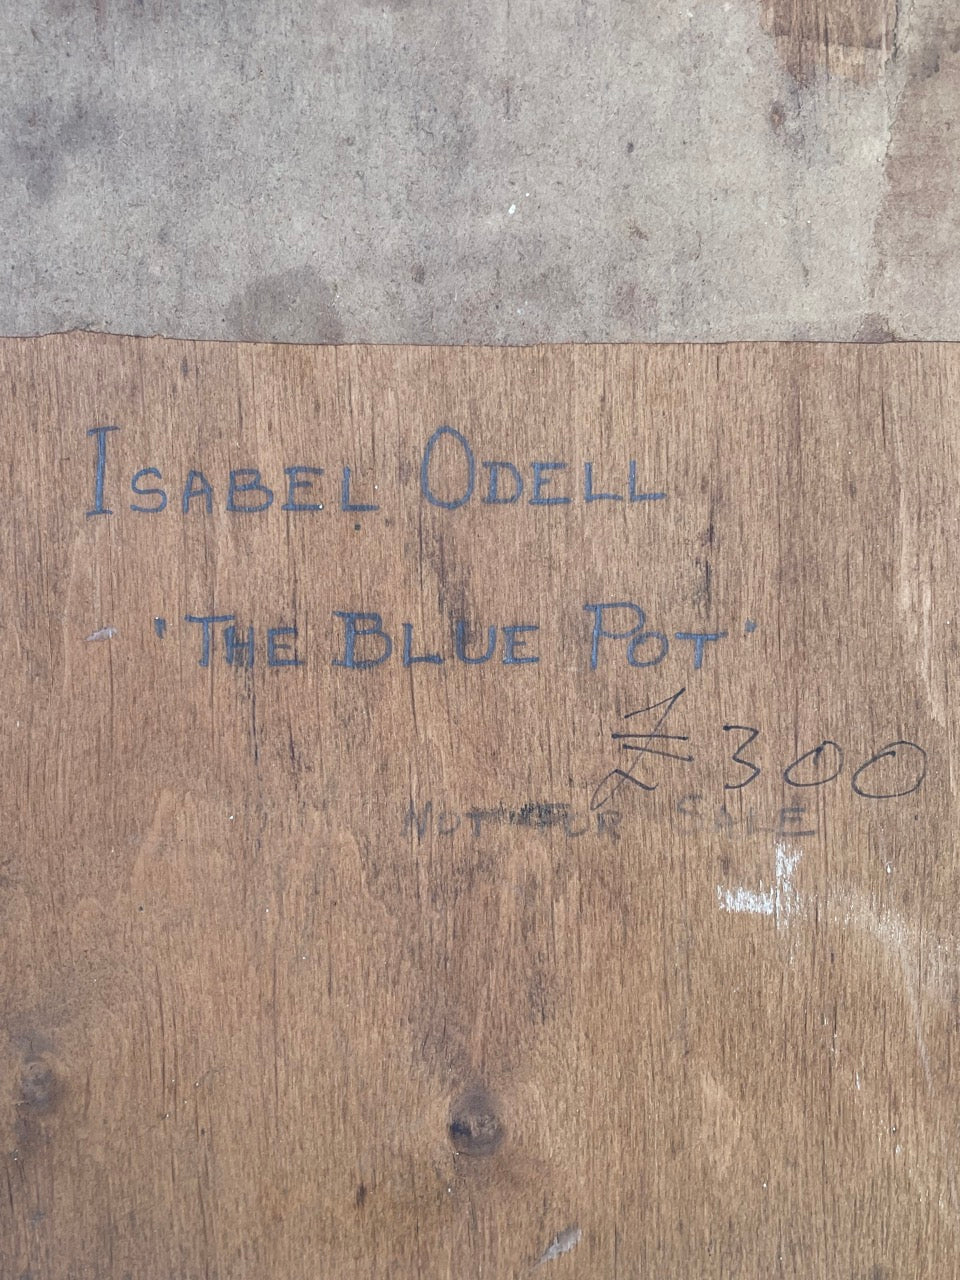 Isabel Odell (1971 -1943), The Blue Pot